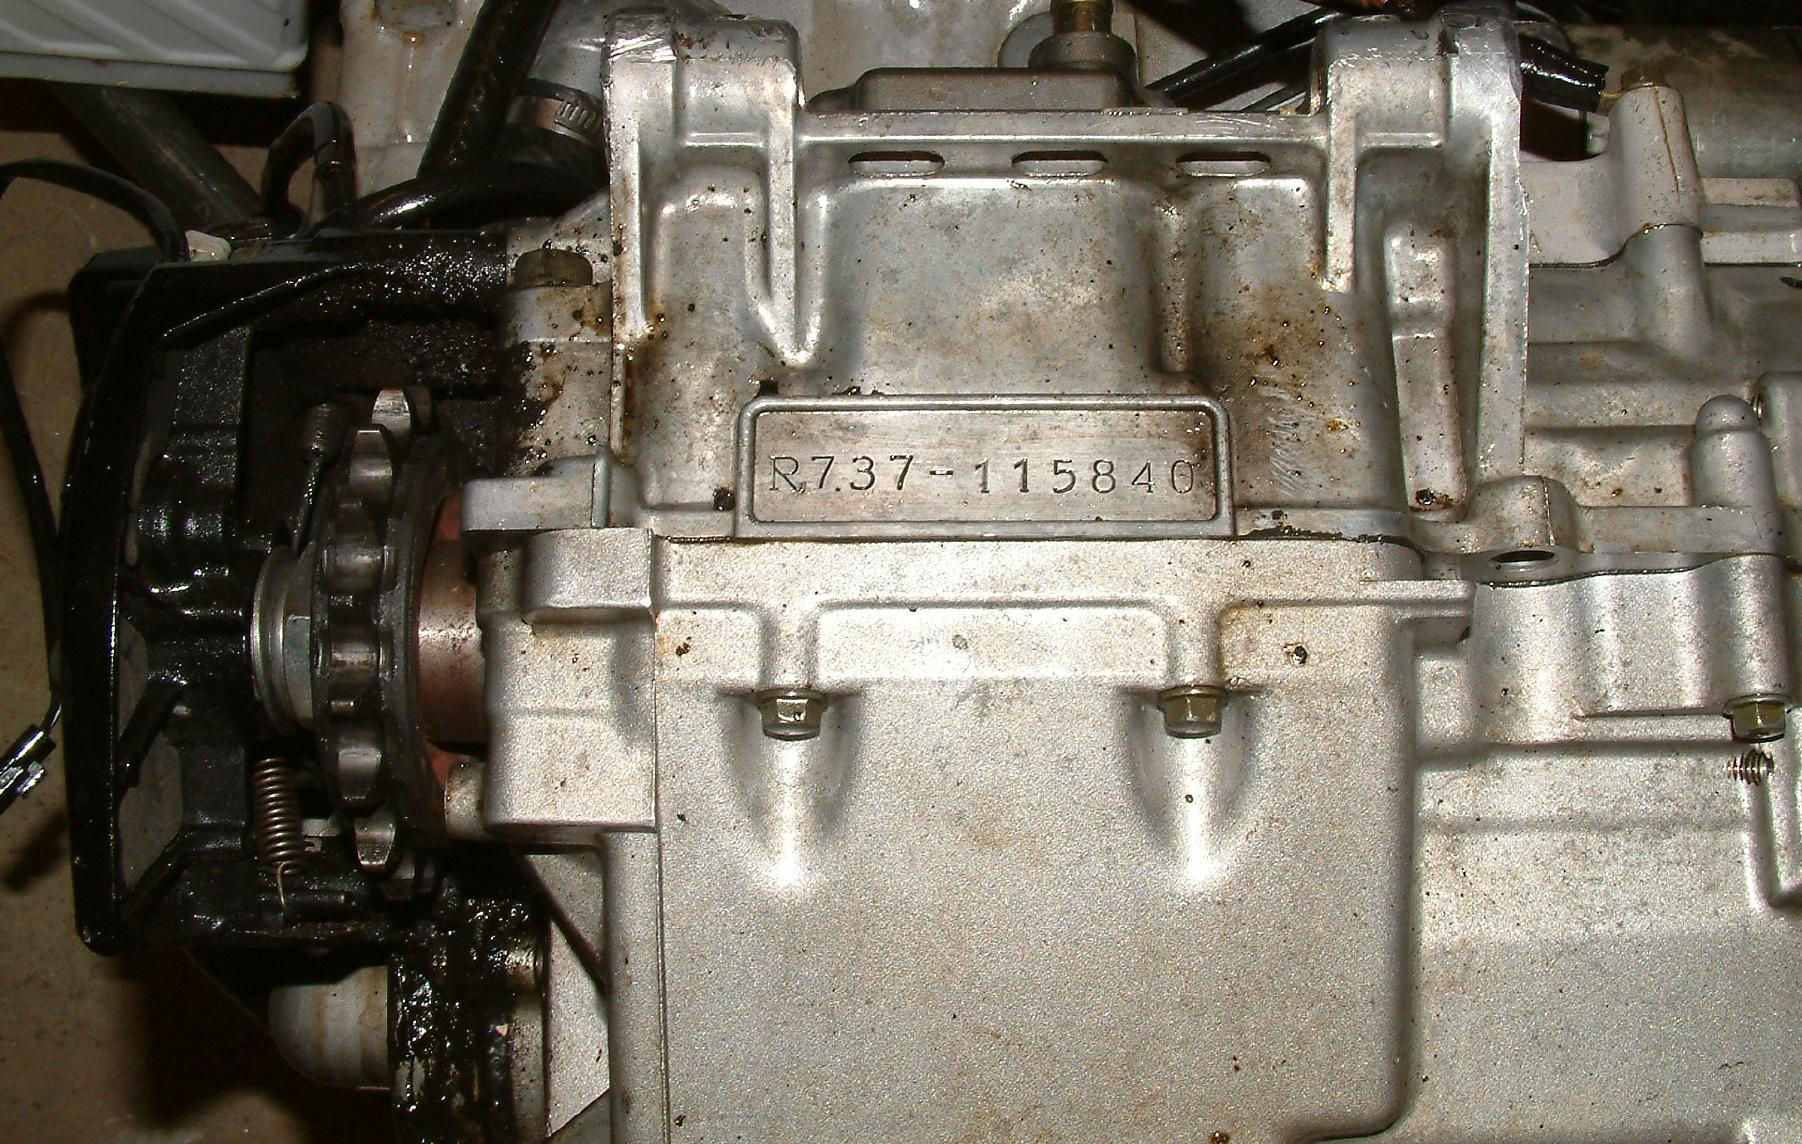 Suzuki gsxr 750 engine serial number